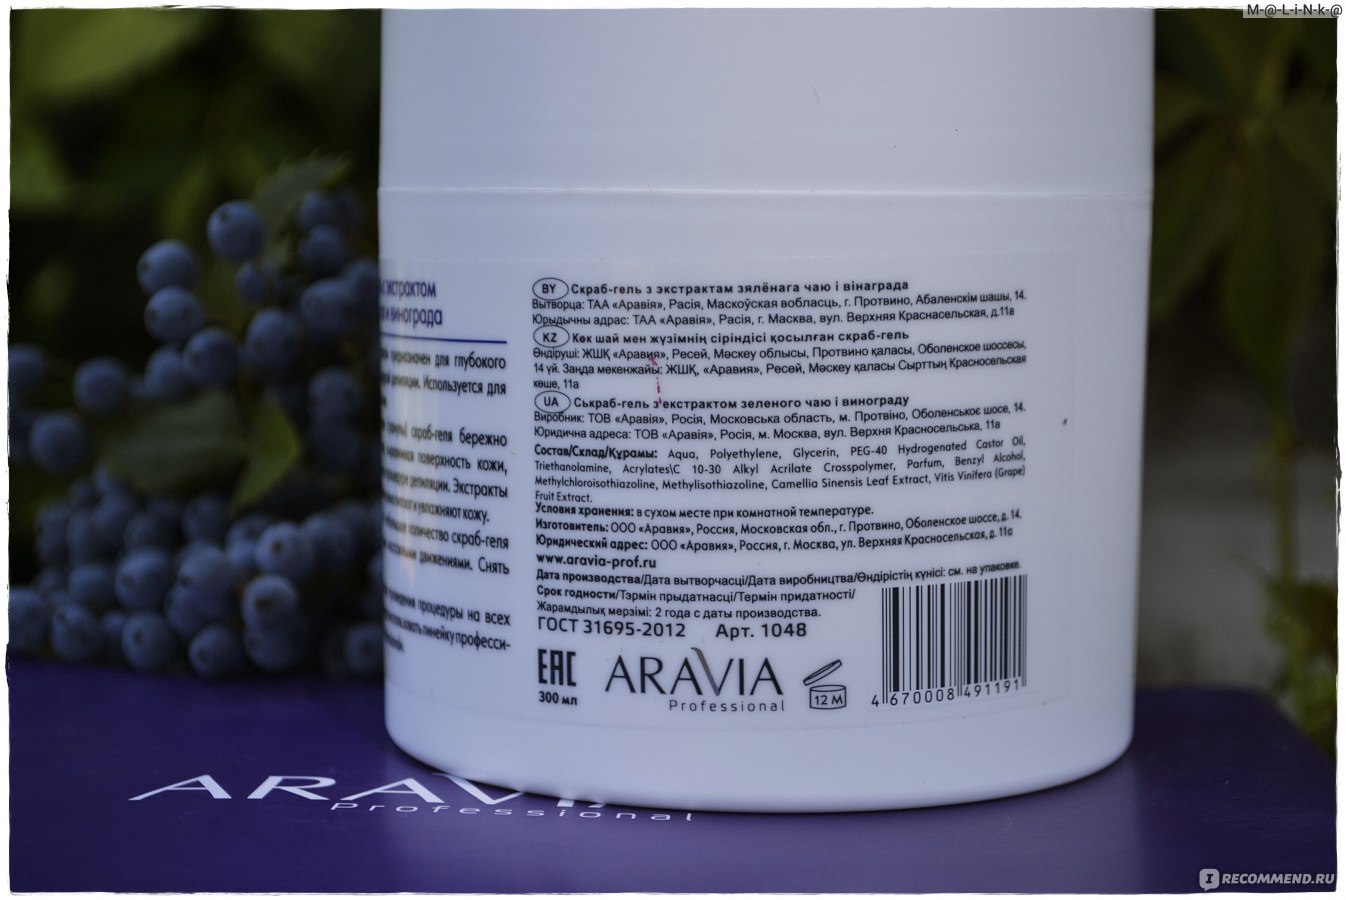 Скраб-гель aravia professional перед депиляцией с экстрактом зеленого чая и винограда